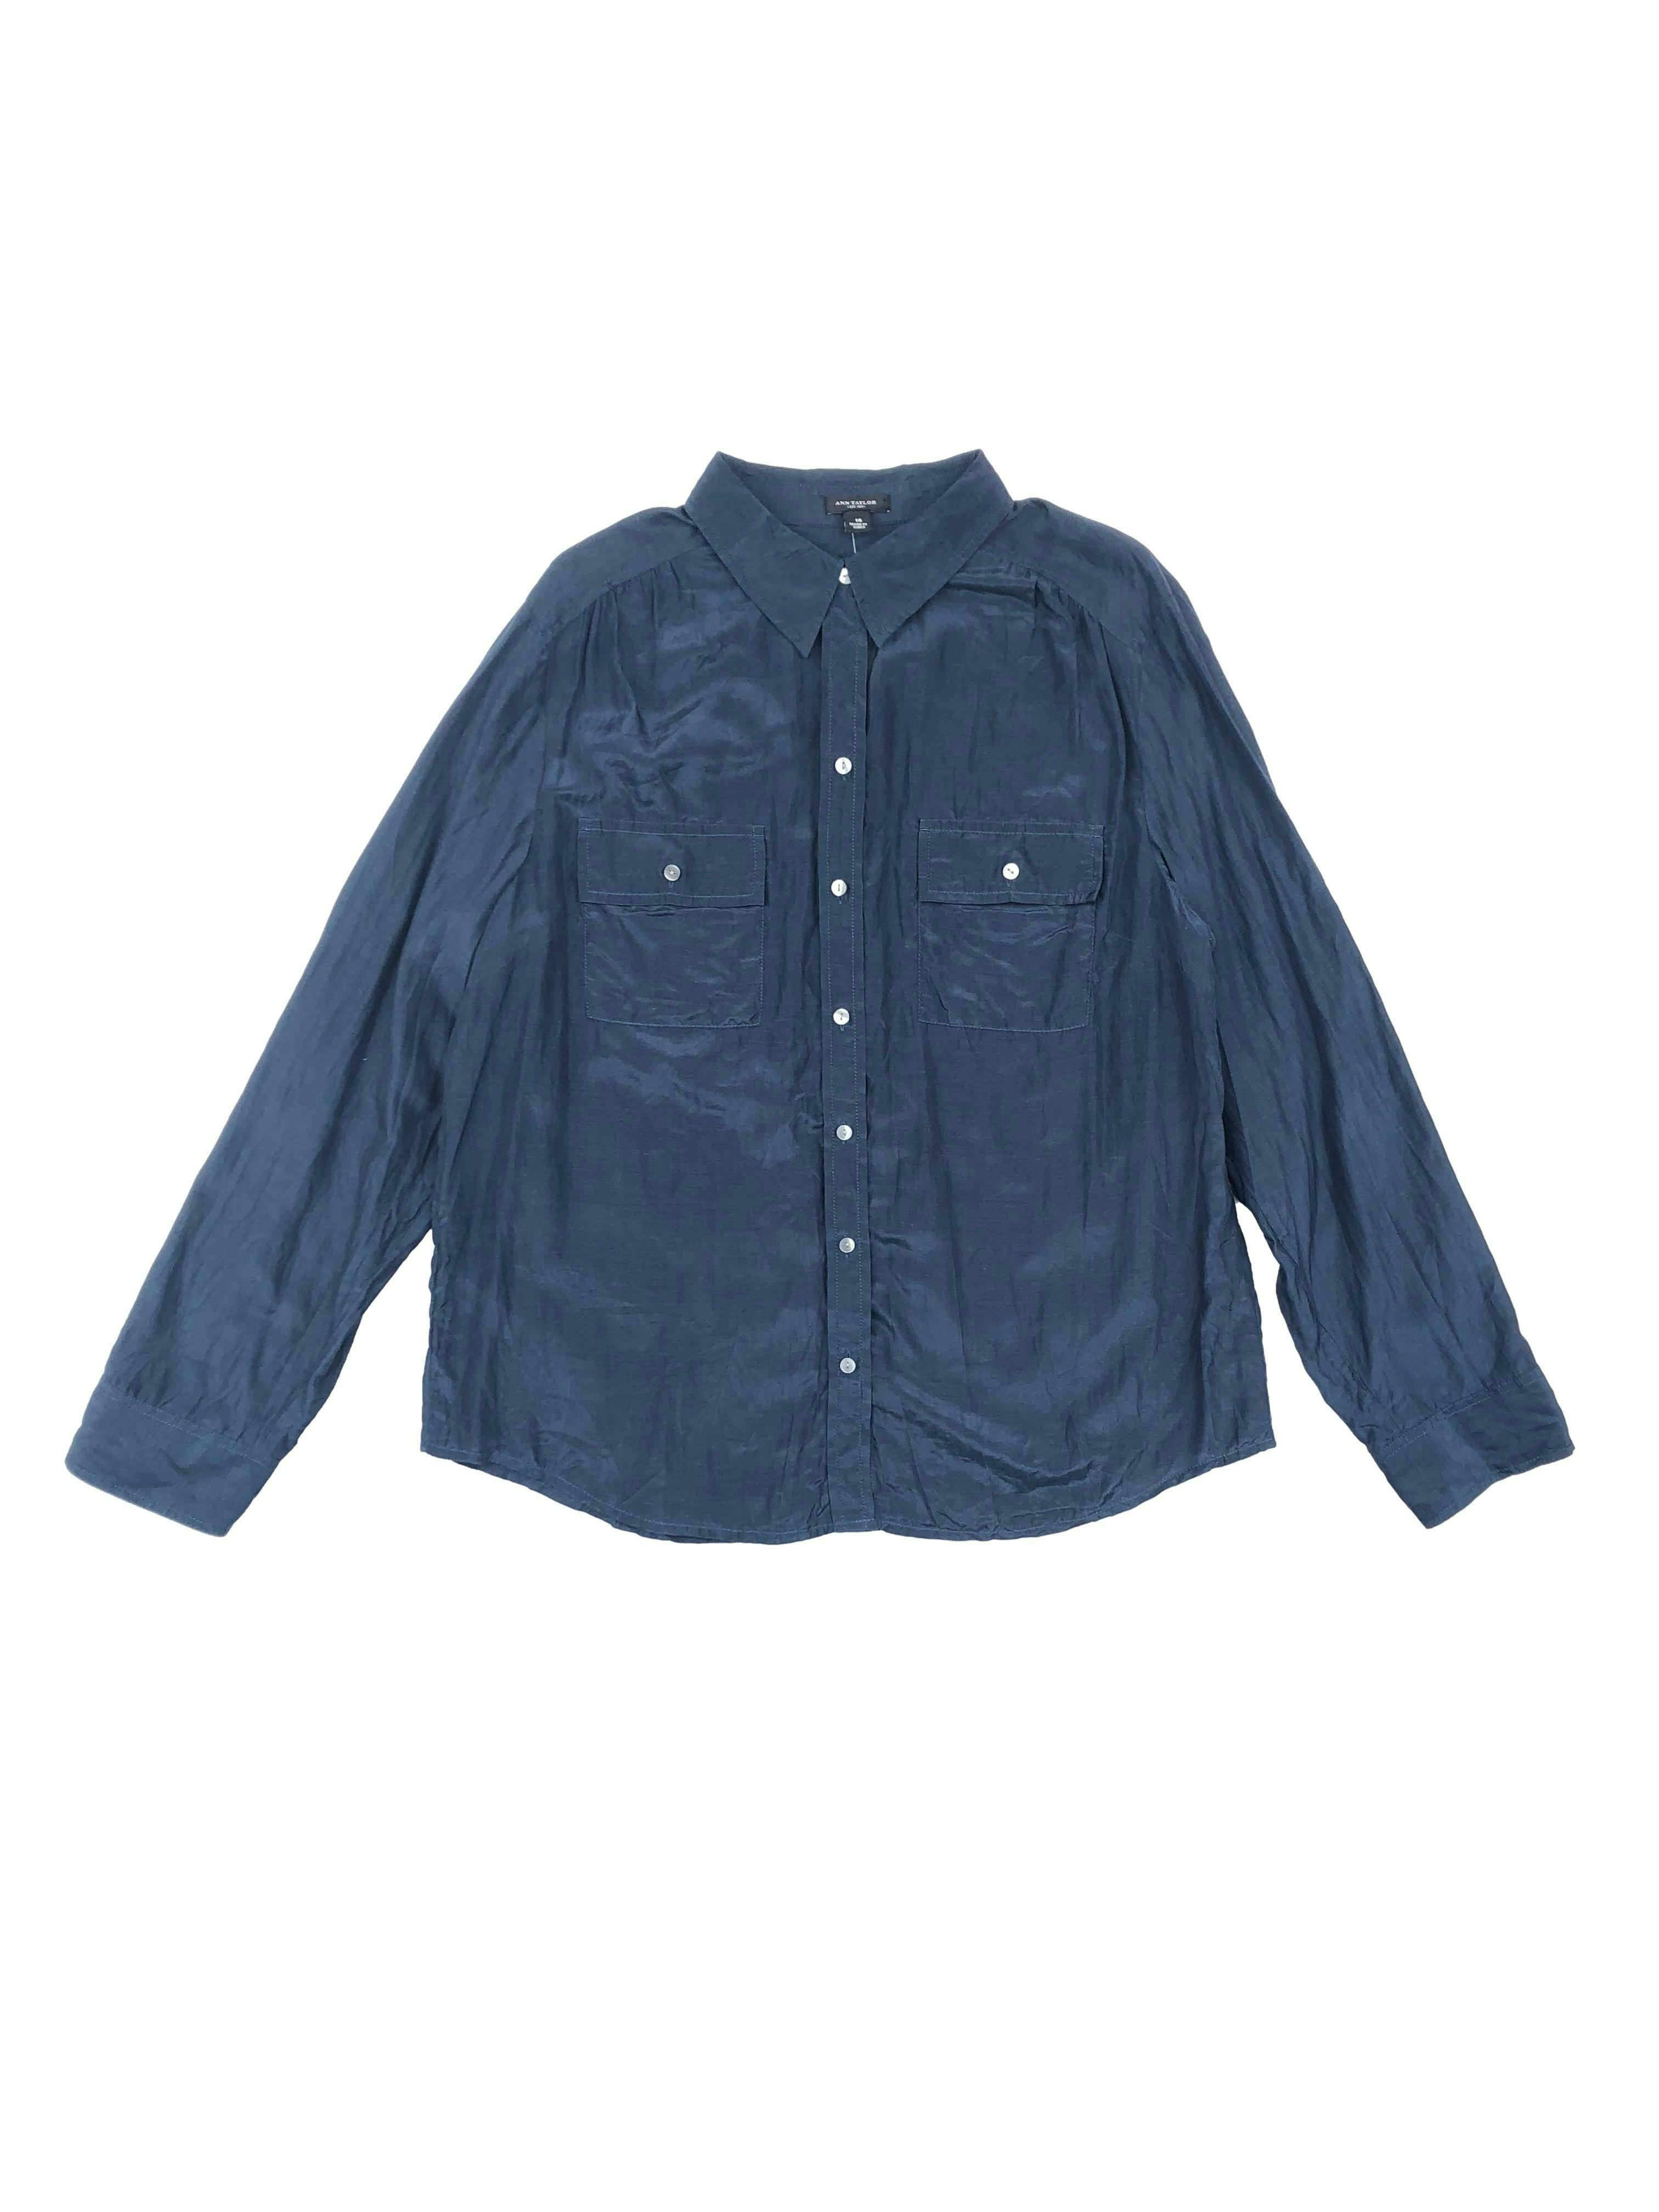 Blusa Ann Taylor azul, camisero con bolsillos en pecho, mangas regulables con botón. Busto 112cm Largo 62cm